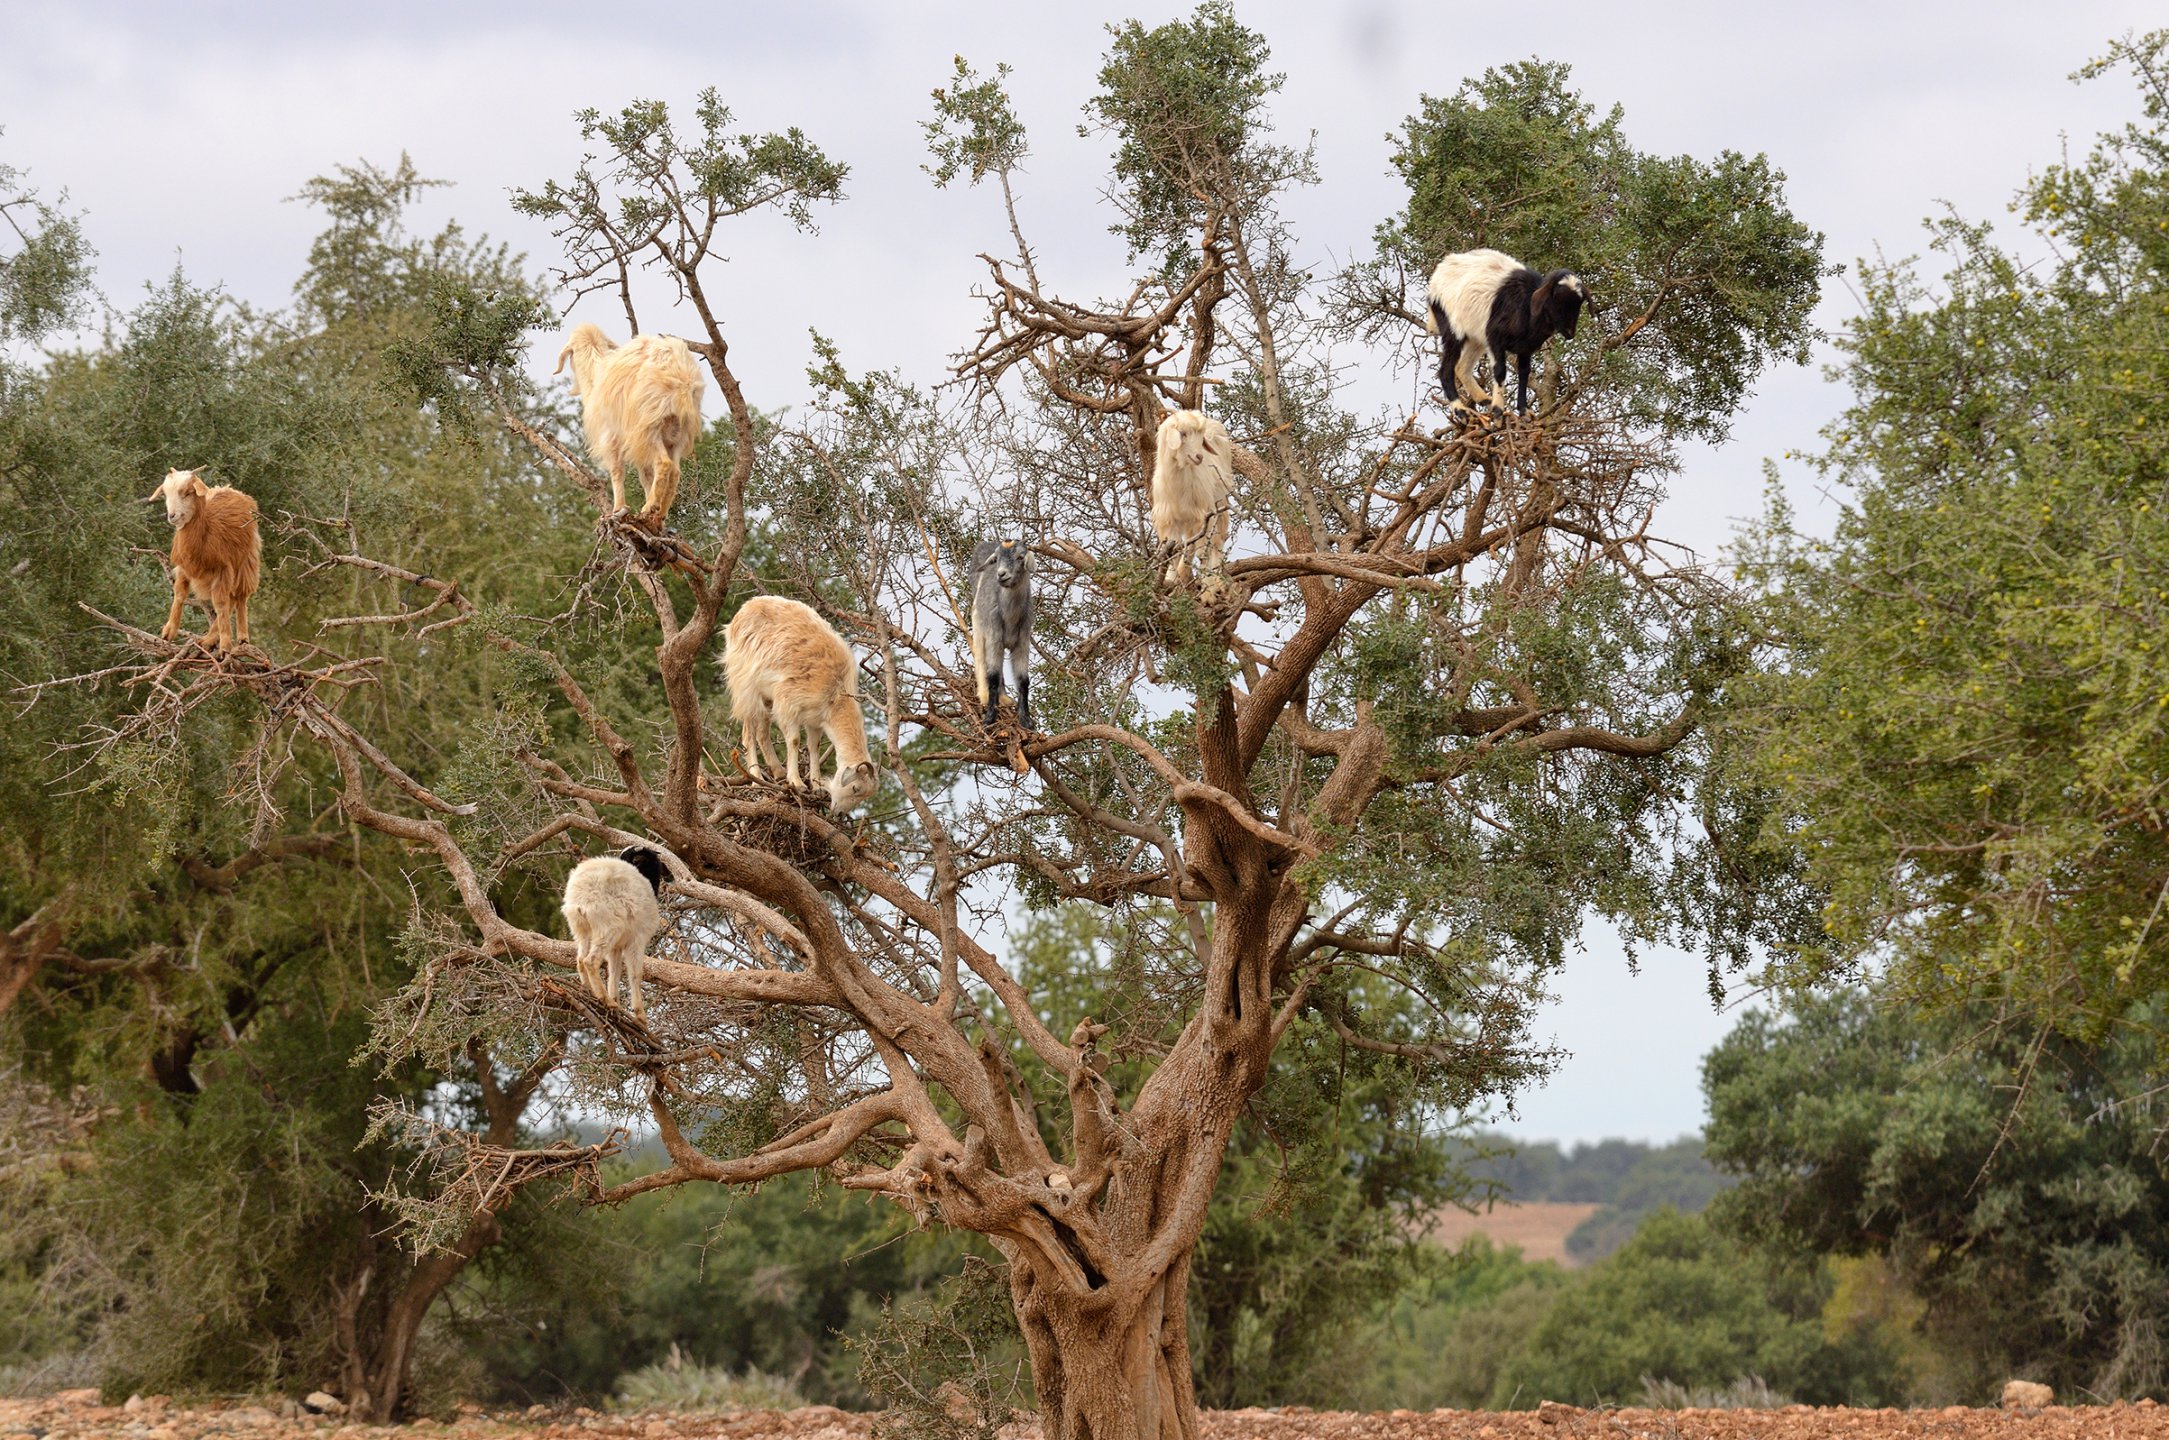 Летающие козы на дереве арган, Марокко